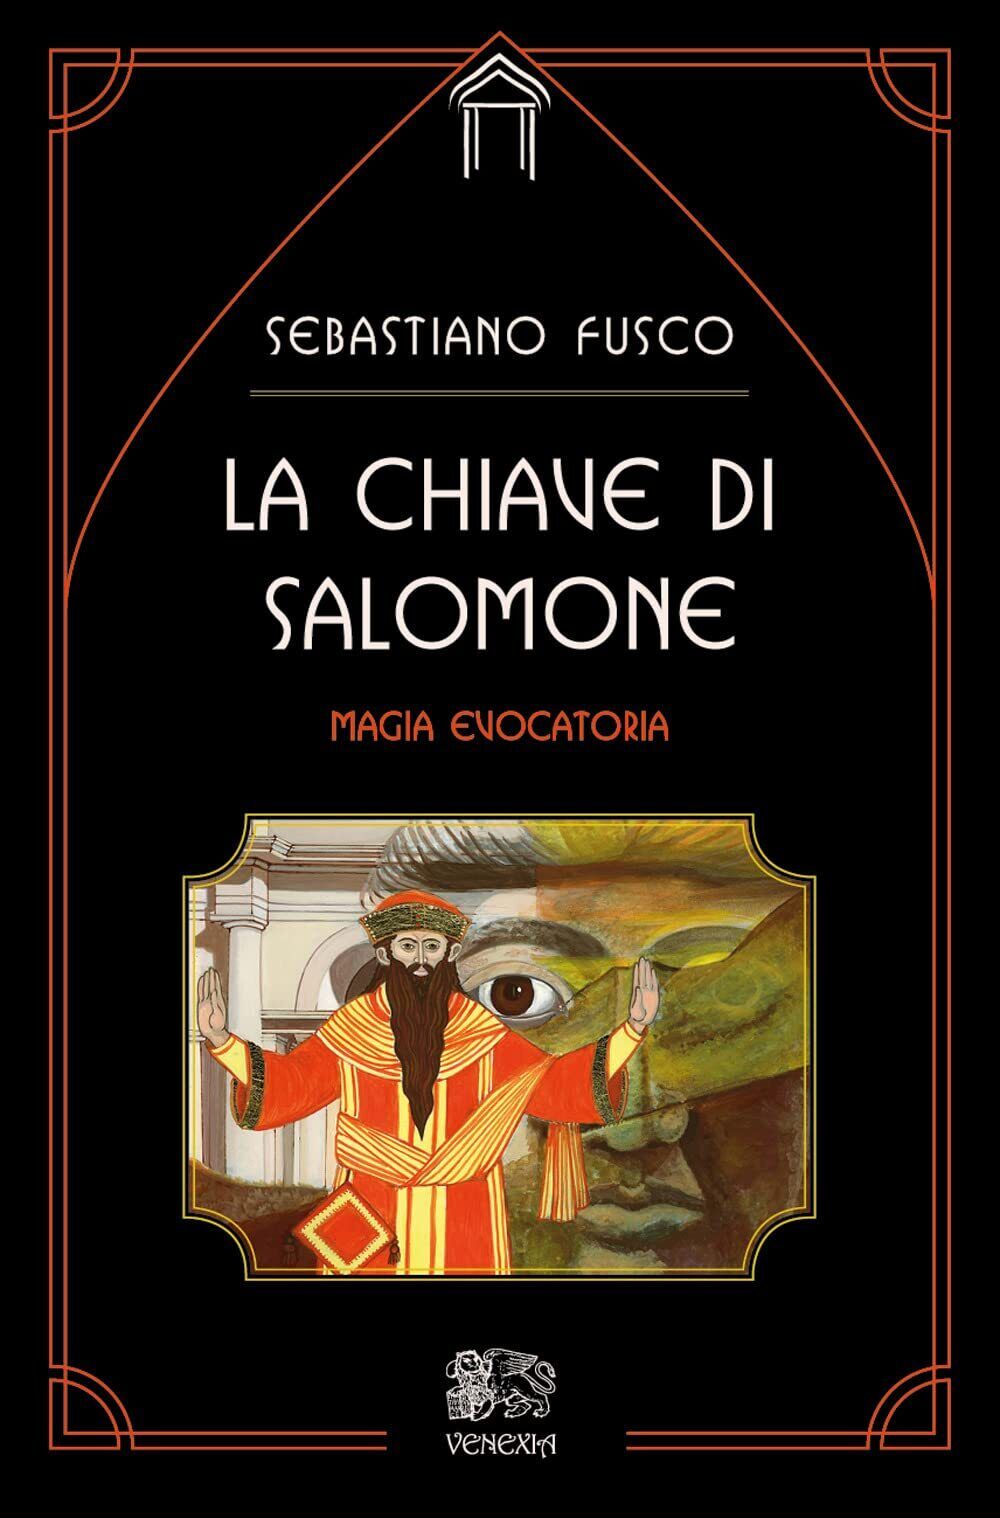 La chiave di Salomone: la magia evocatoria - Sebastiano Fusco - Venexia, 2022